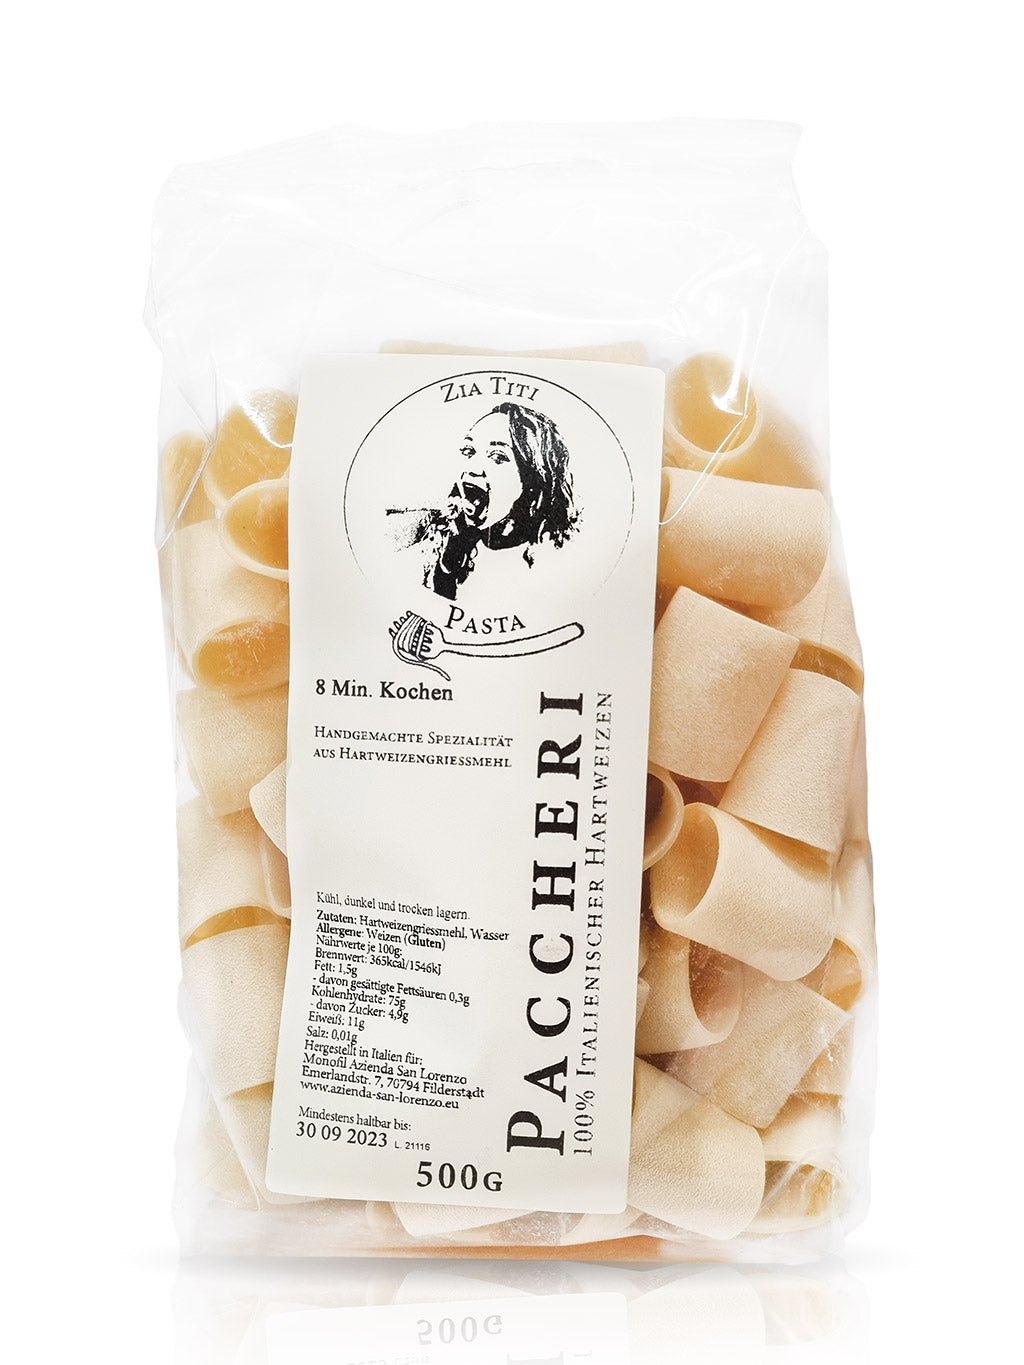 Paccheri online kaufen Nudeln Rigatoni Pasta aus Italien